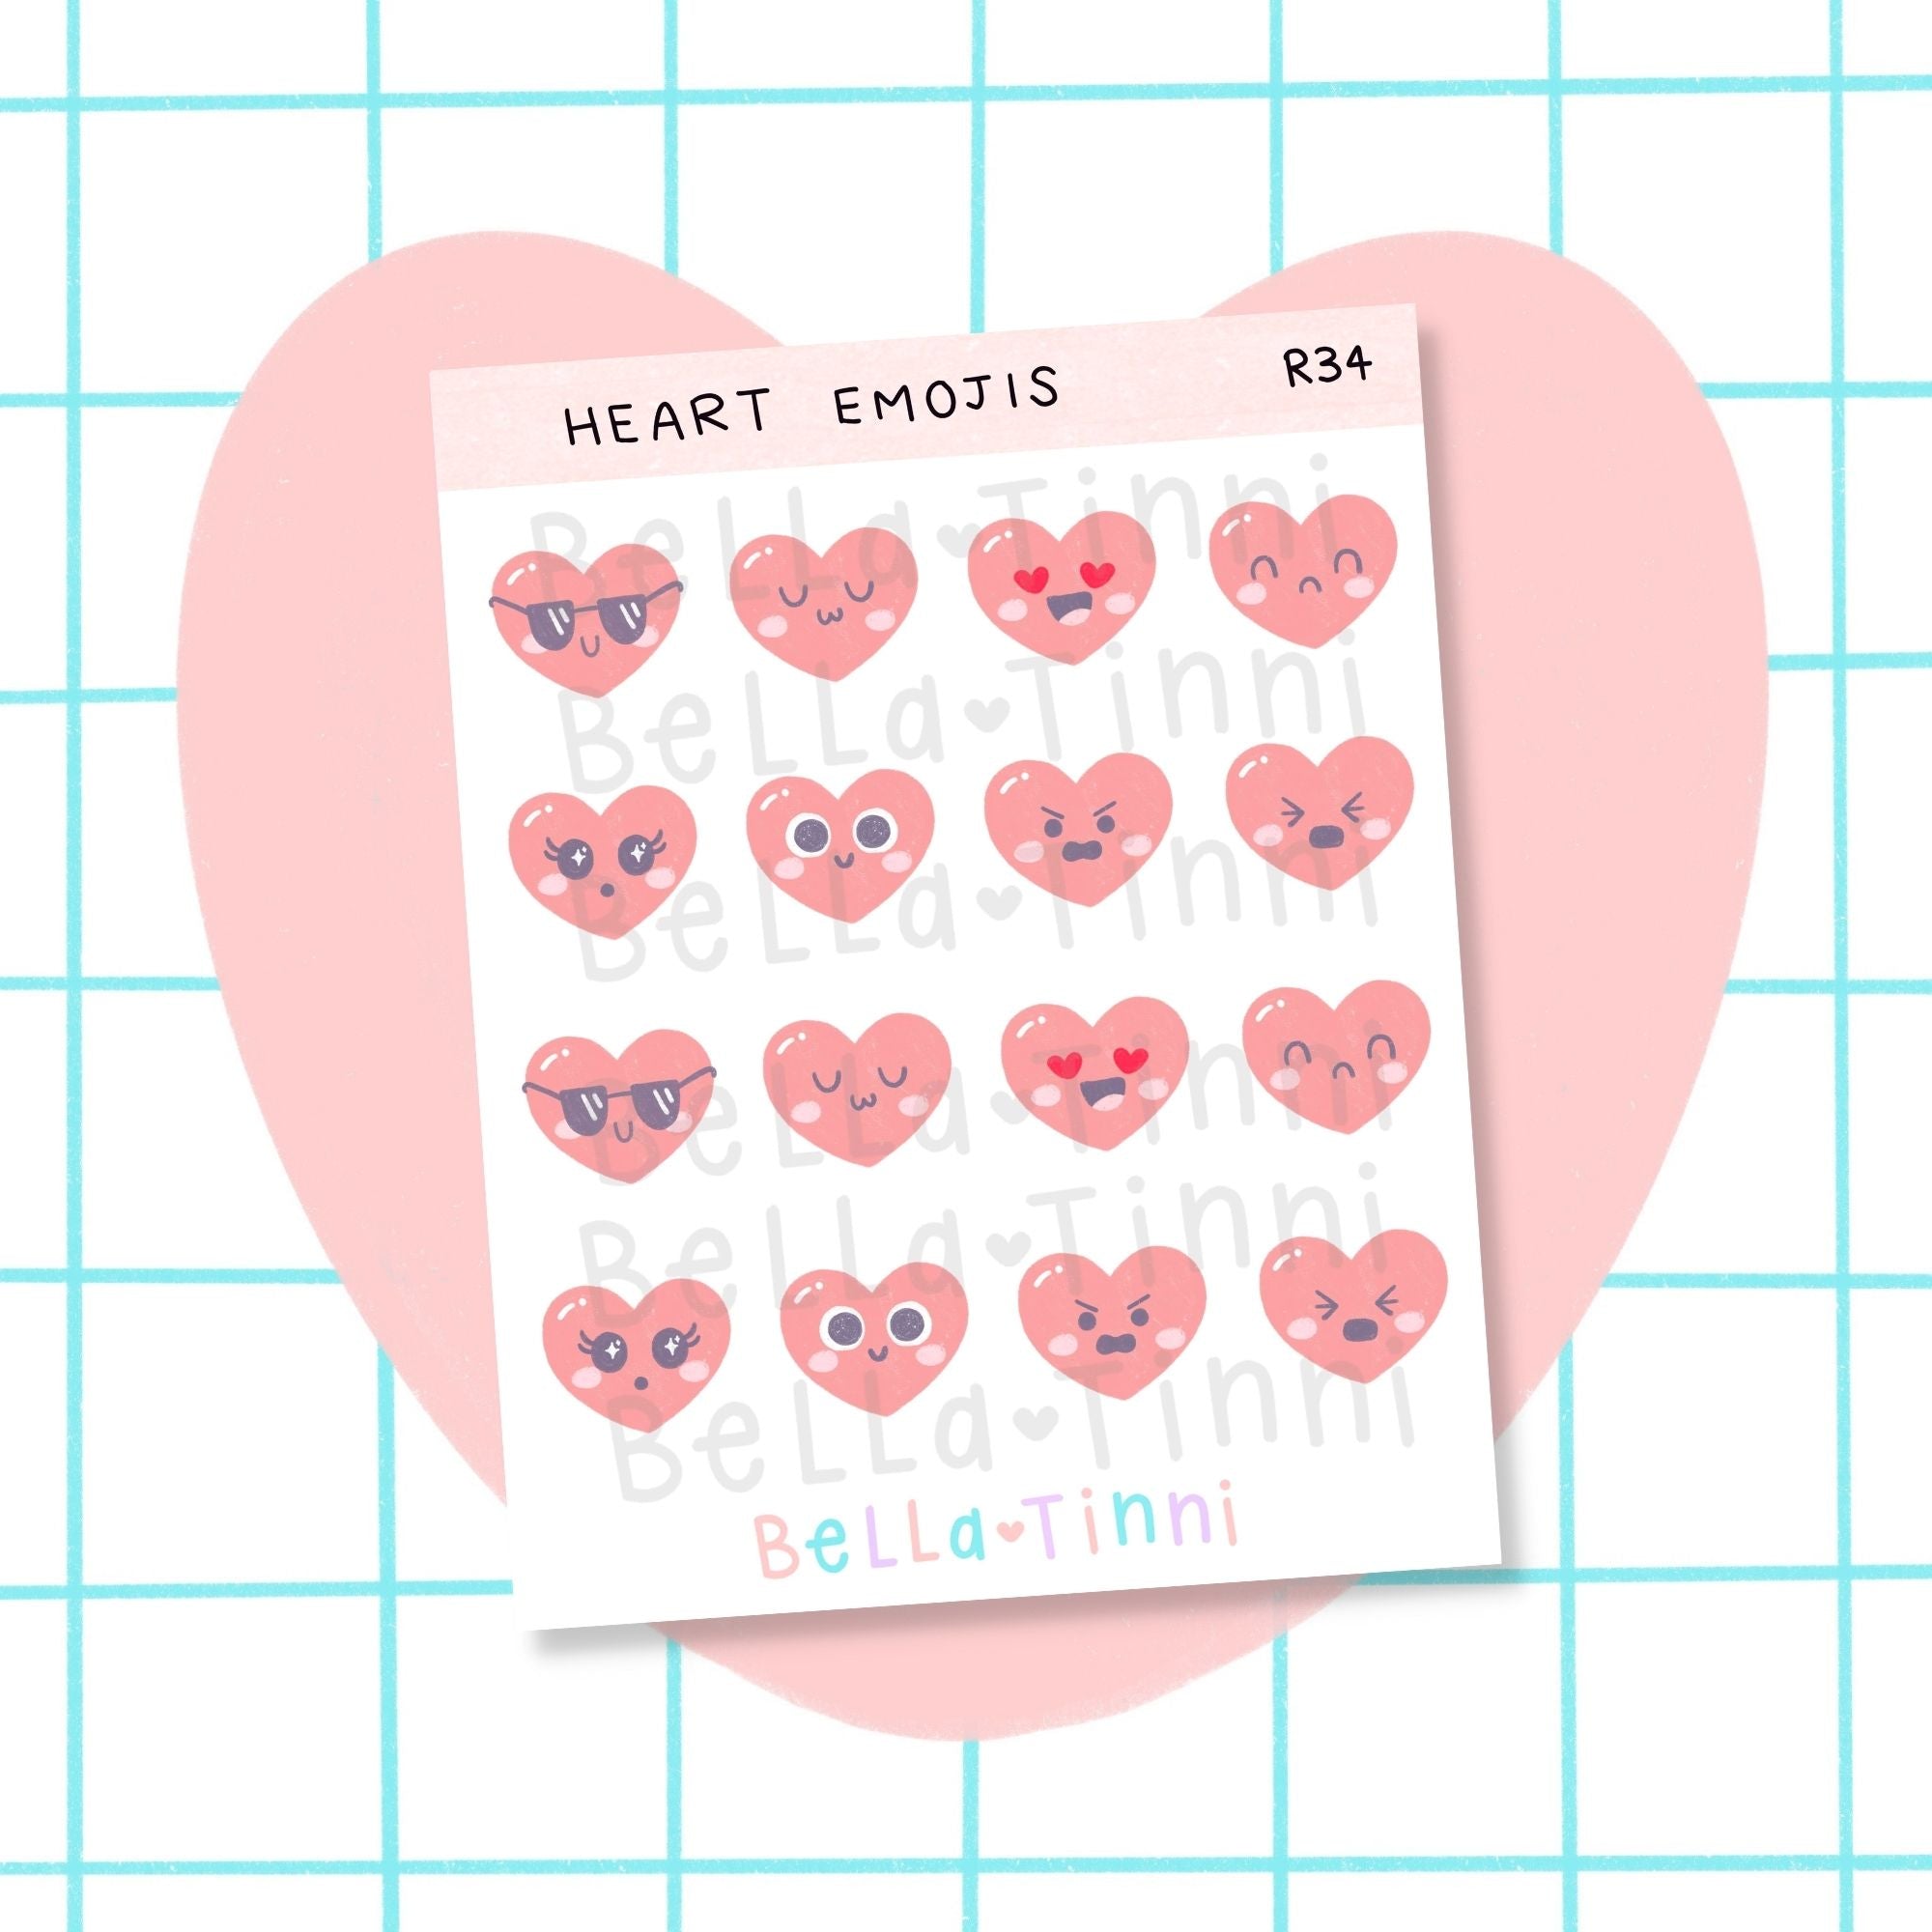 Heart Emojis - R34